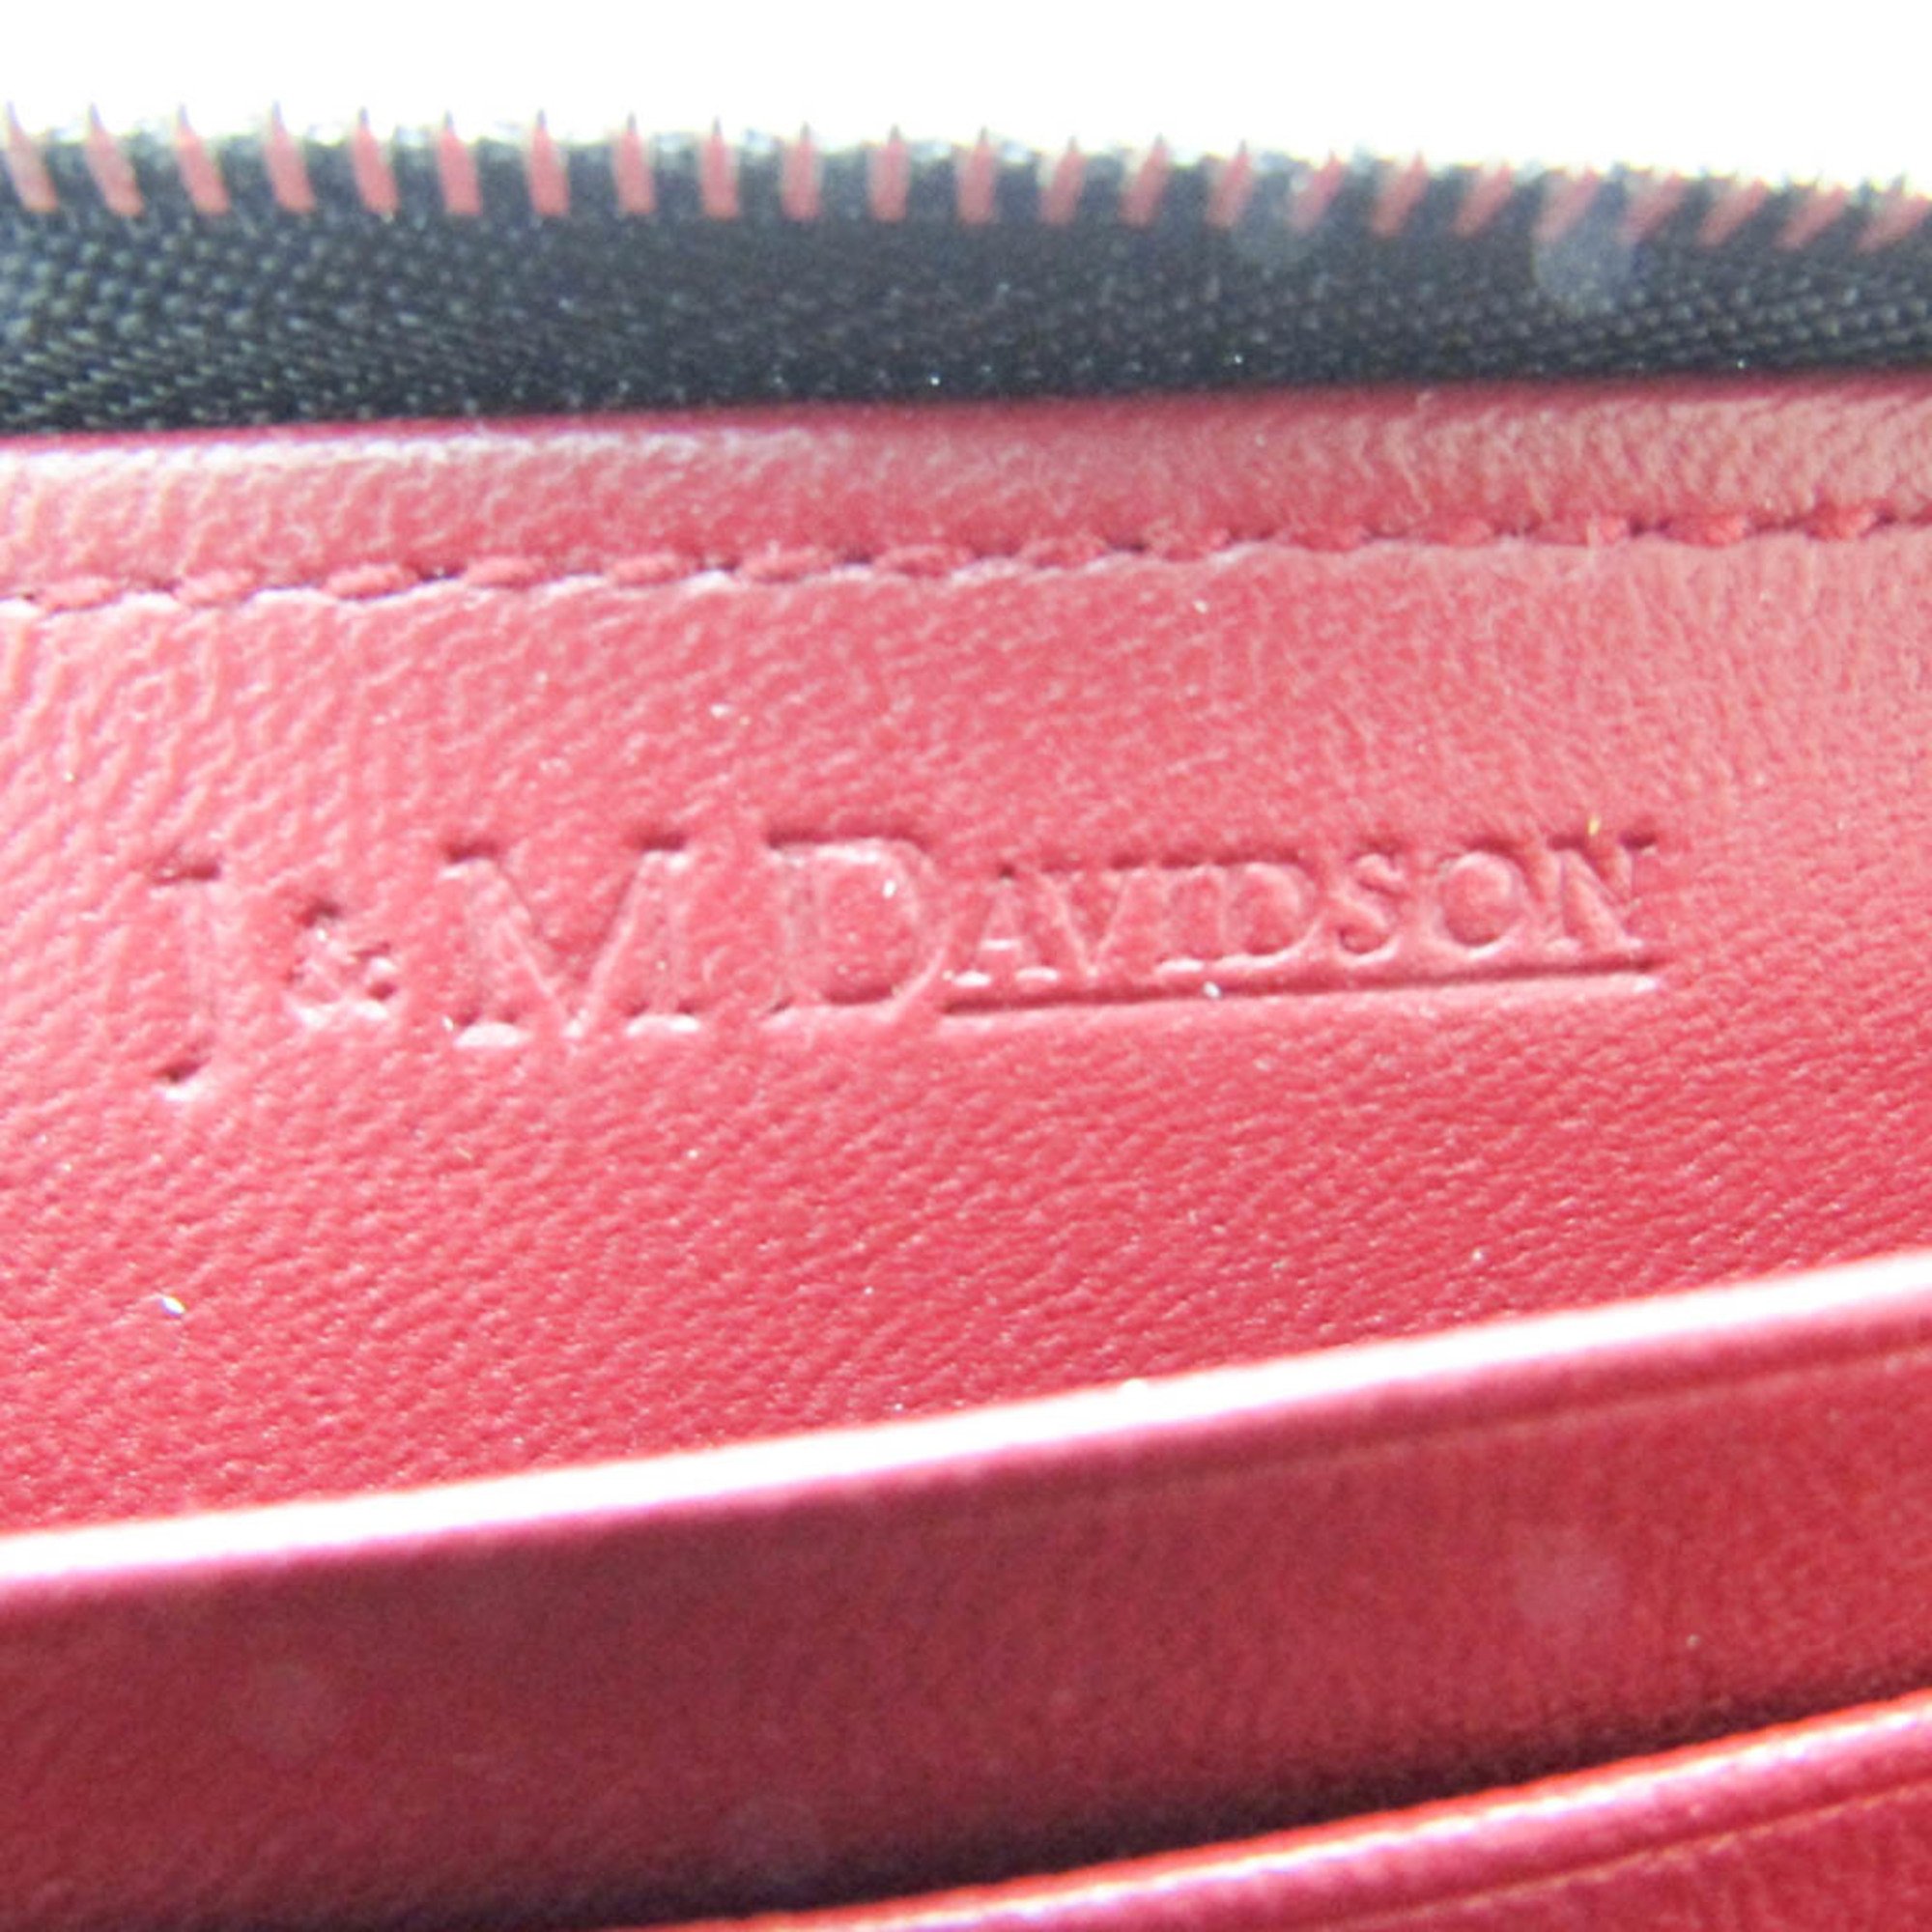 J&M Davidson S ZIP AROUND PURSE SAFFIANO 10224N Women's Leather Coin Purse/coin Case Black,Bordeaux